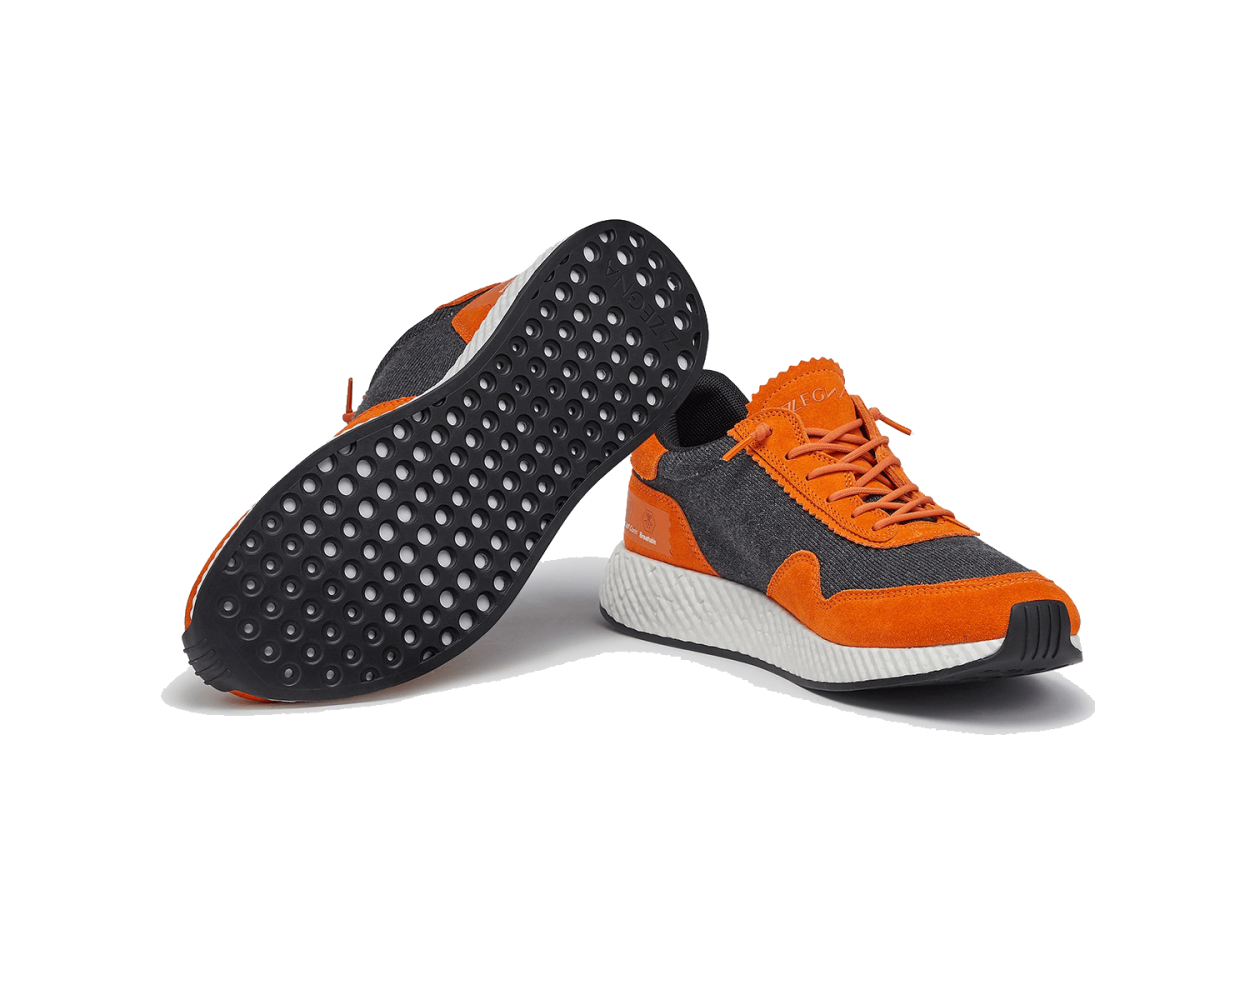 Leather Sneaker - brown 1-23756-41-344: Buy Tamaris Sneakers online!